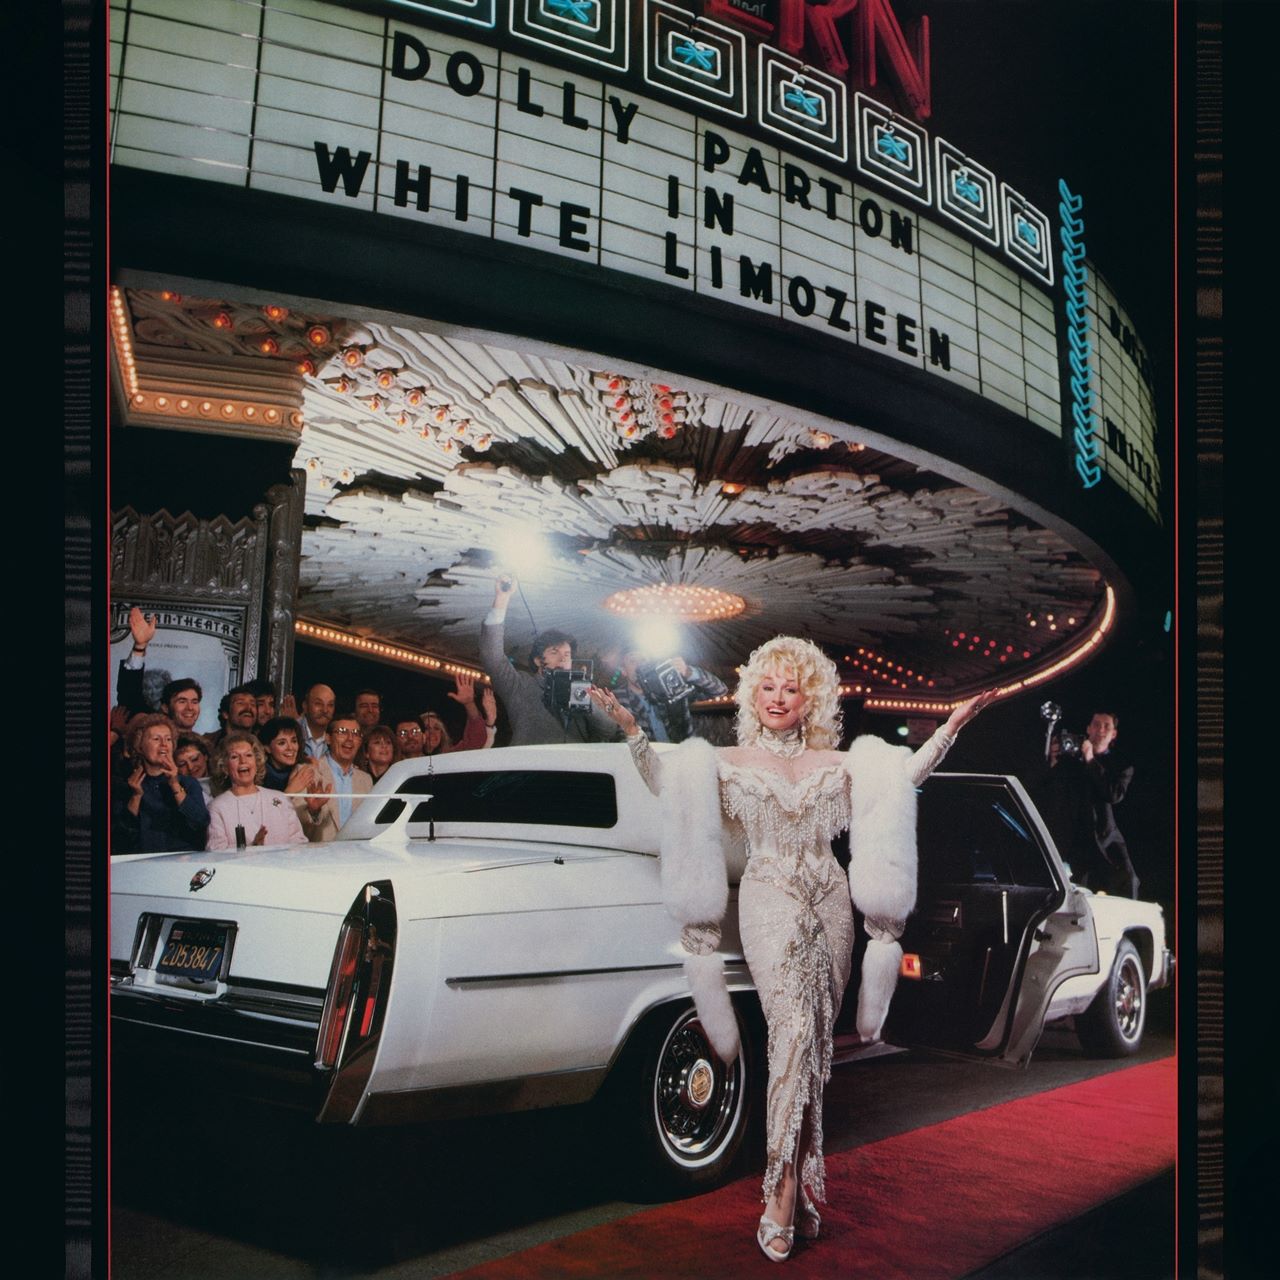 Dolly Parton – White Limozeen cover album